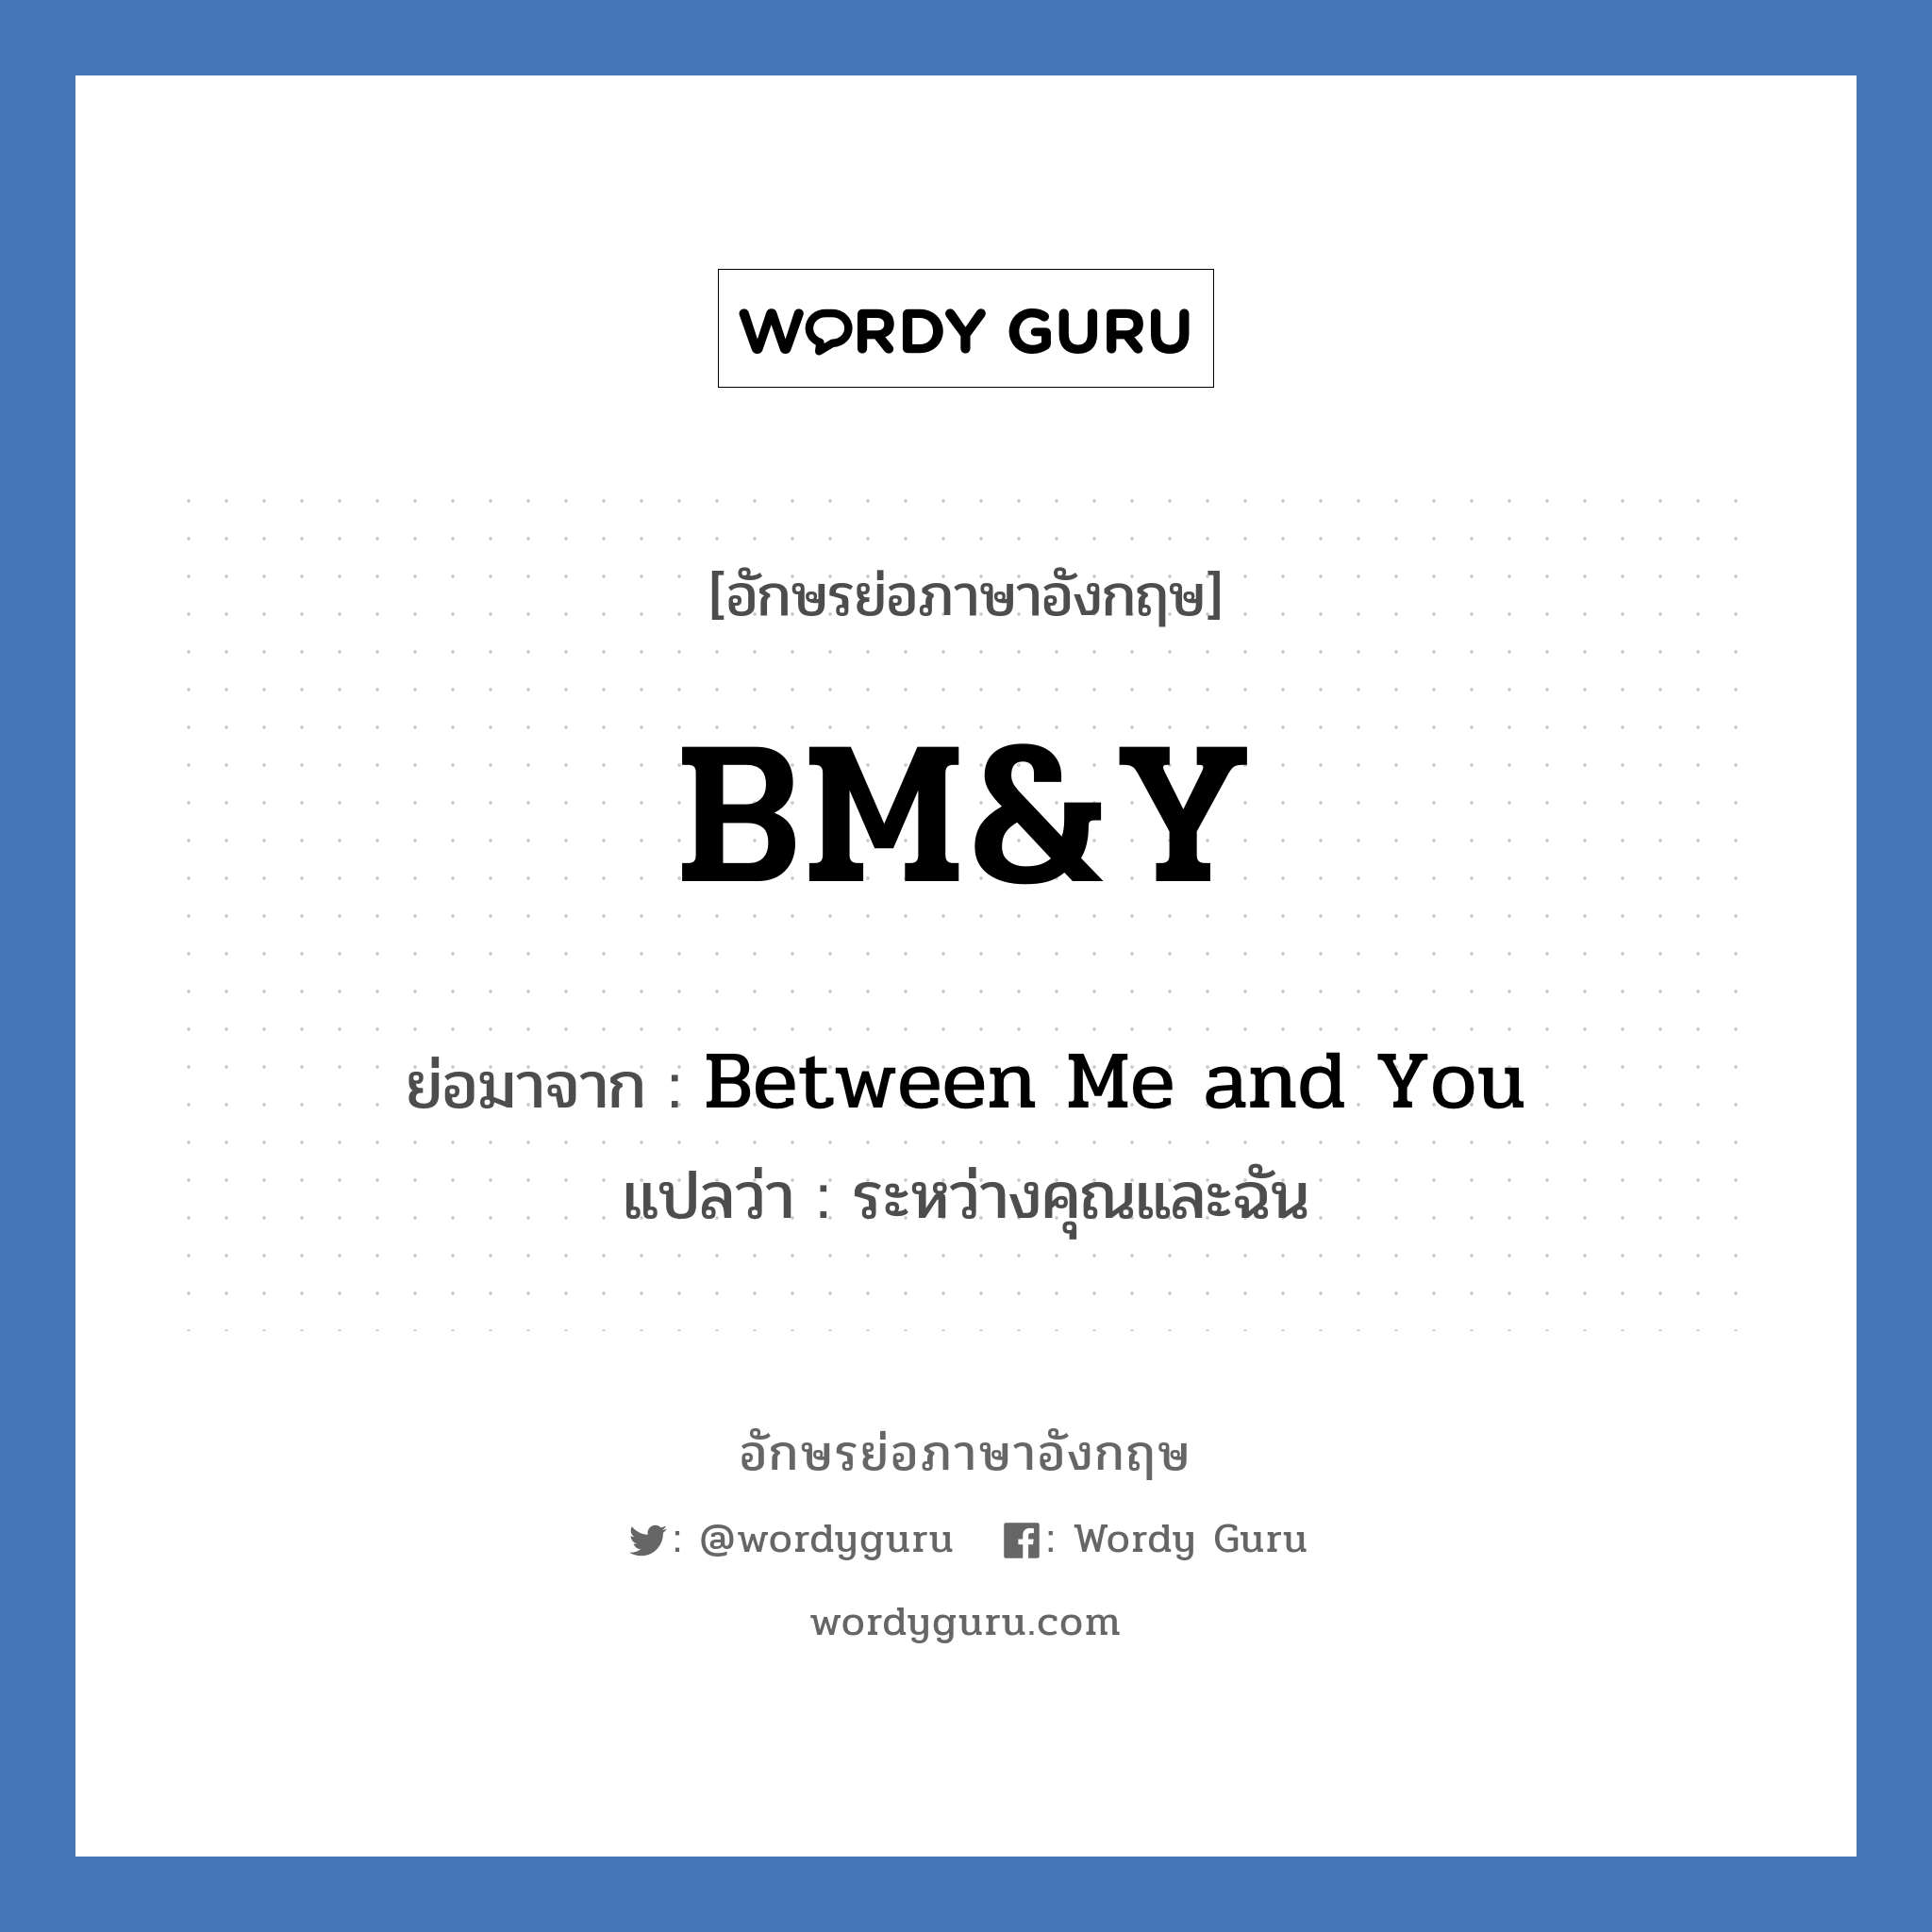 BM&Y ย่อมาจาก? แปลว่า?, อักษรย่อภาษาอังกฤษ BM&Y ย่อมาจาก Between Me and You แปลว่า ระหว่างคุณและฉัน